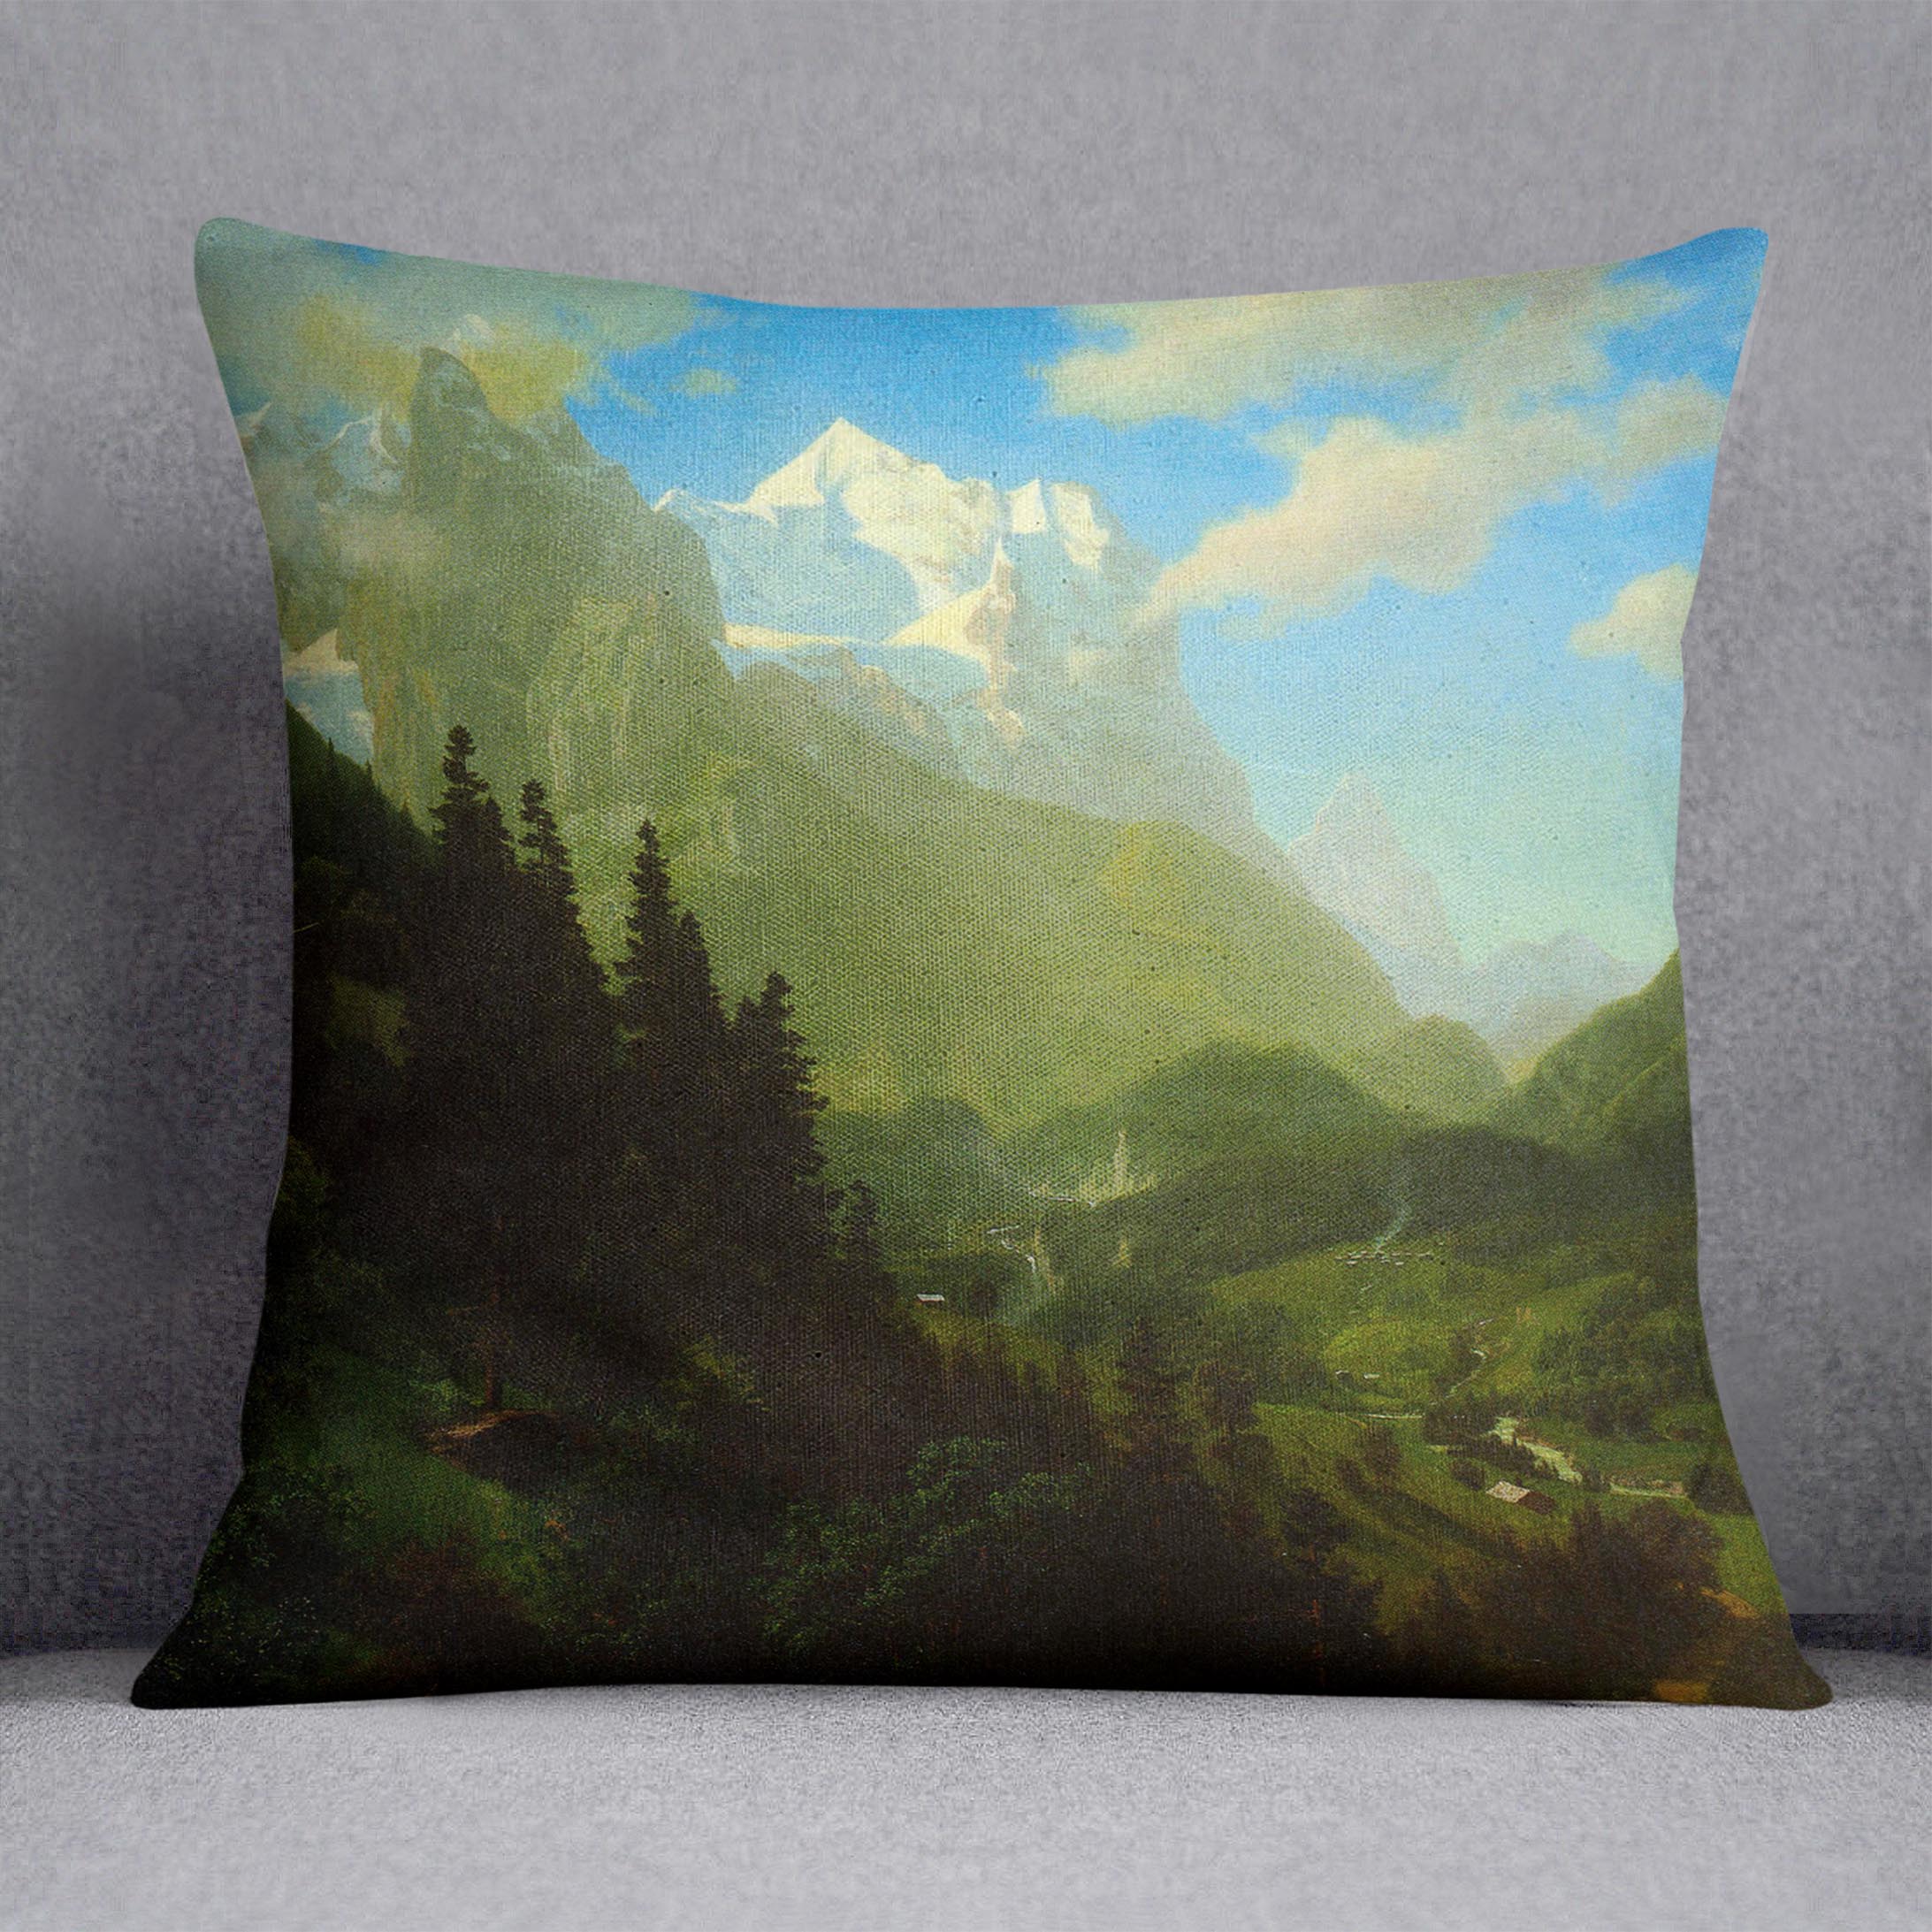 Matterhorn by Bierstadt Cushion - Canvas Art Rocks - 1